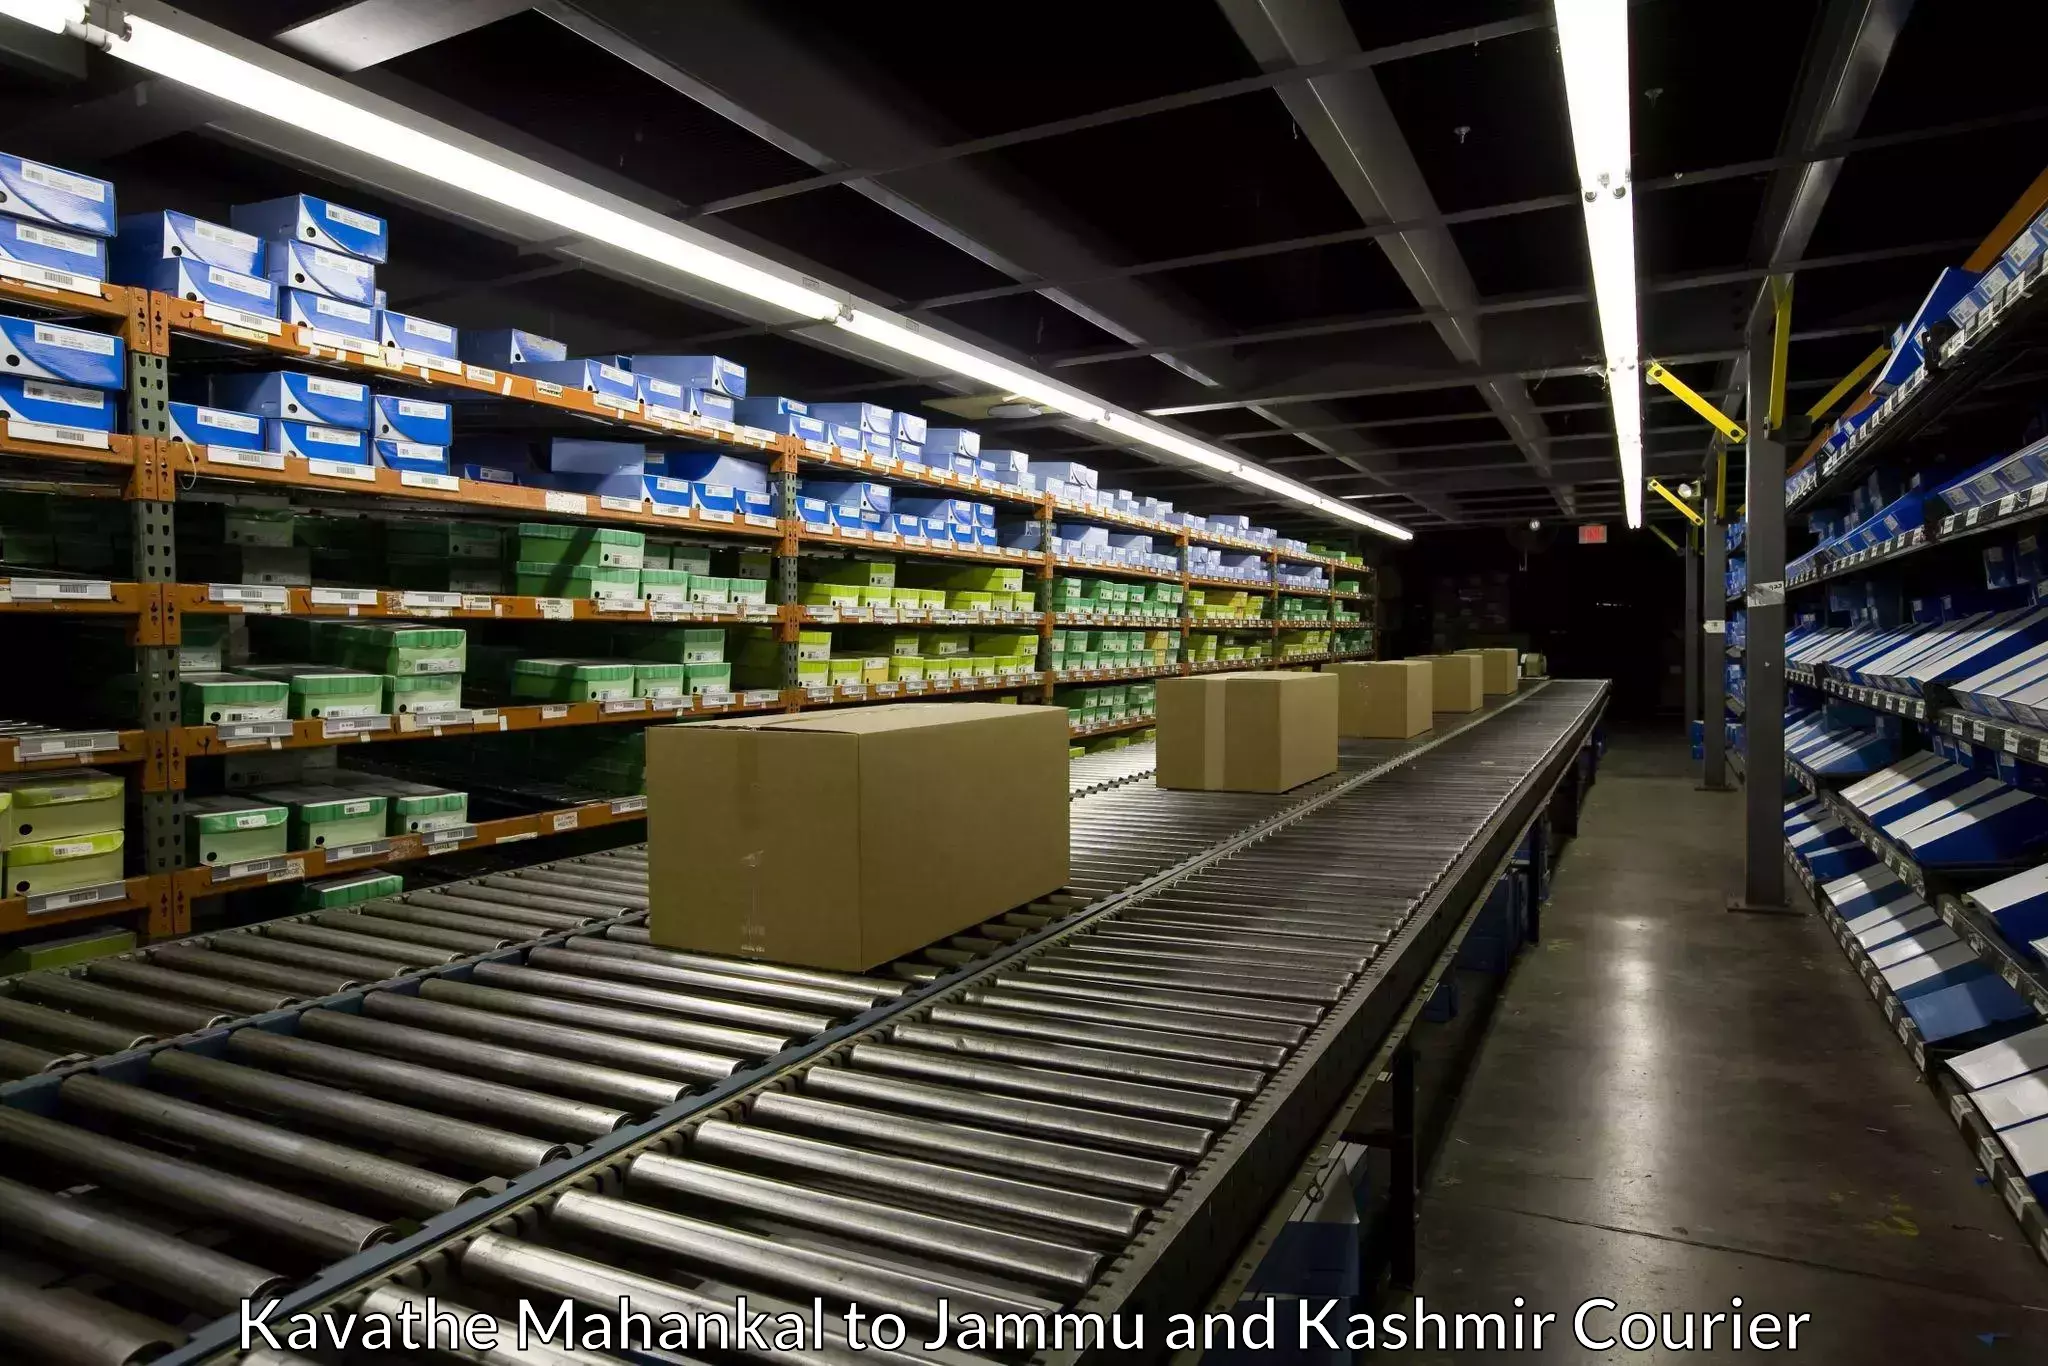 Expedited parcel delivery Kavathe Mahankal to Srinagar Kashmir